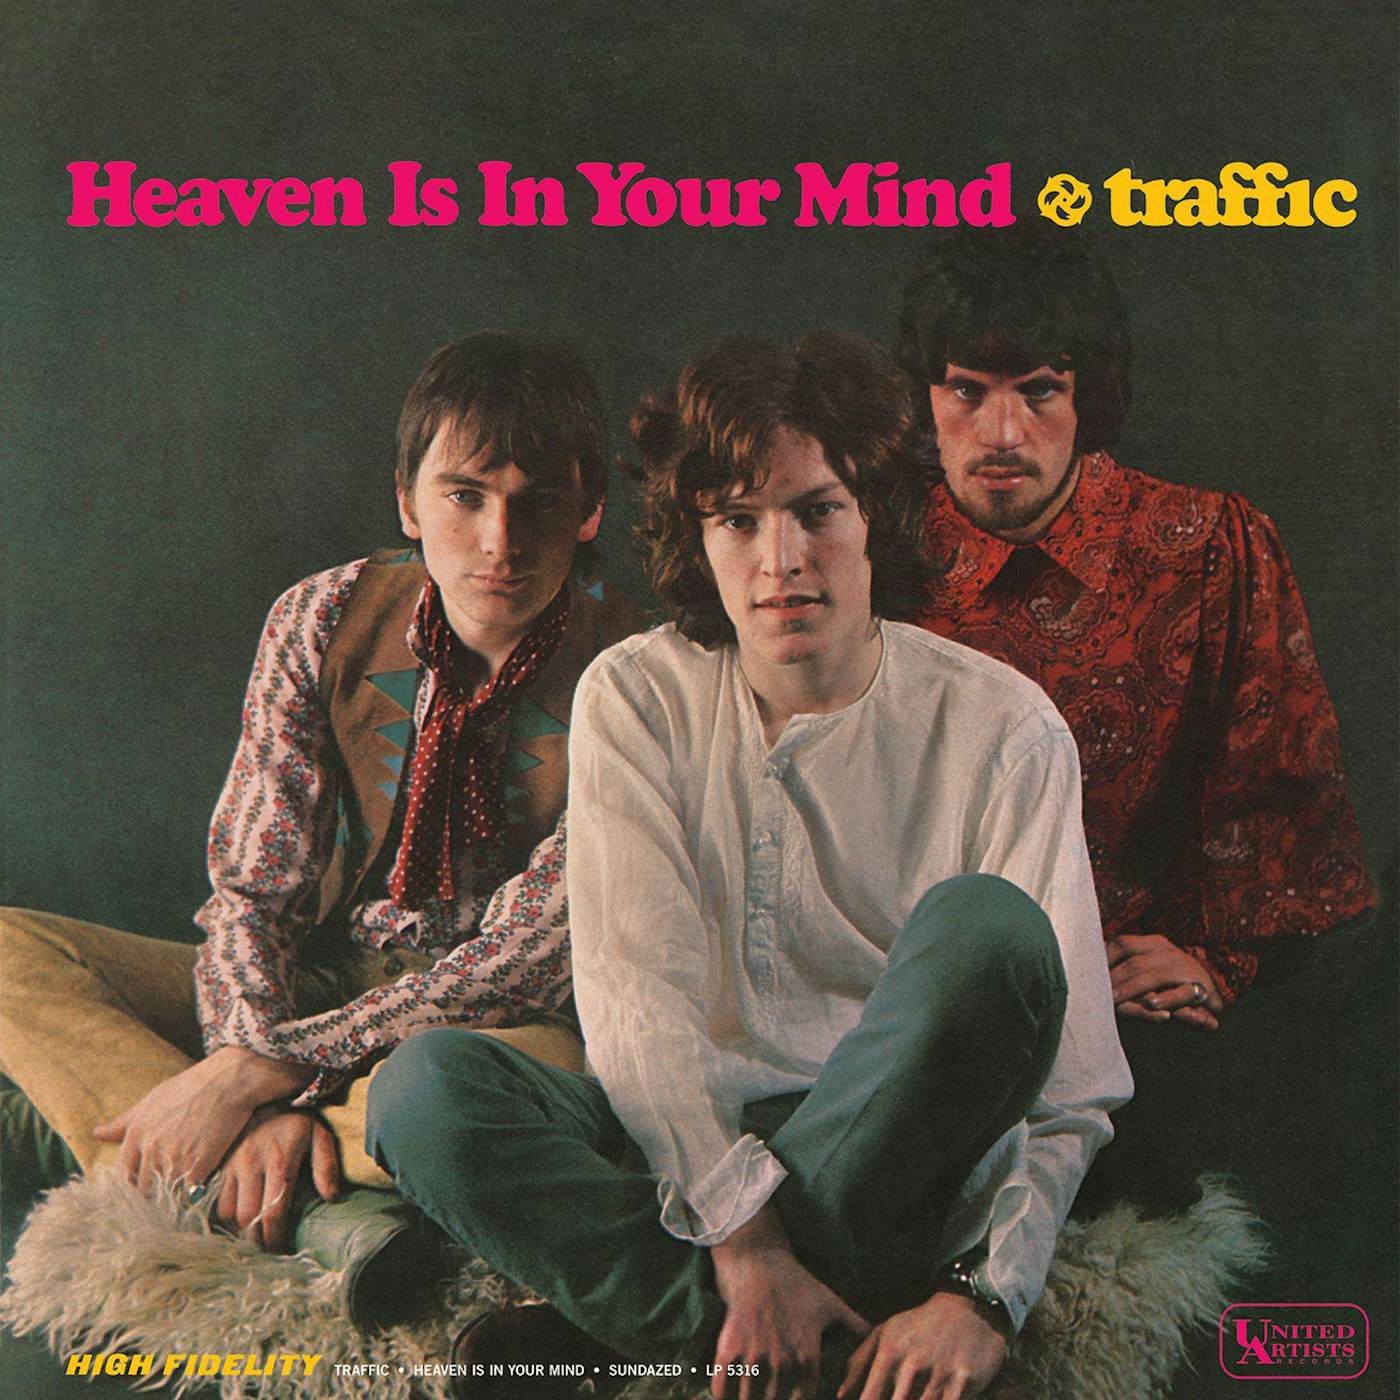 Traffic MR FANTASY Vinyl Record